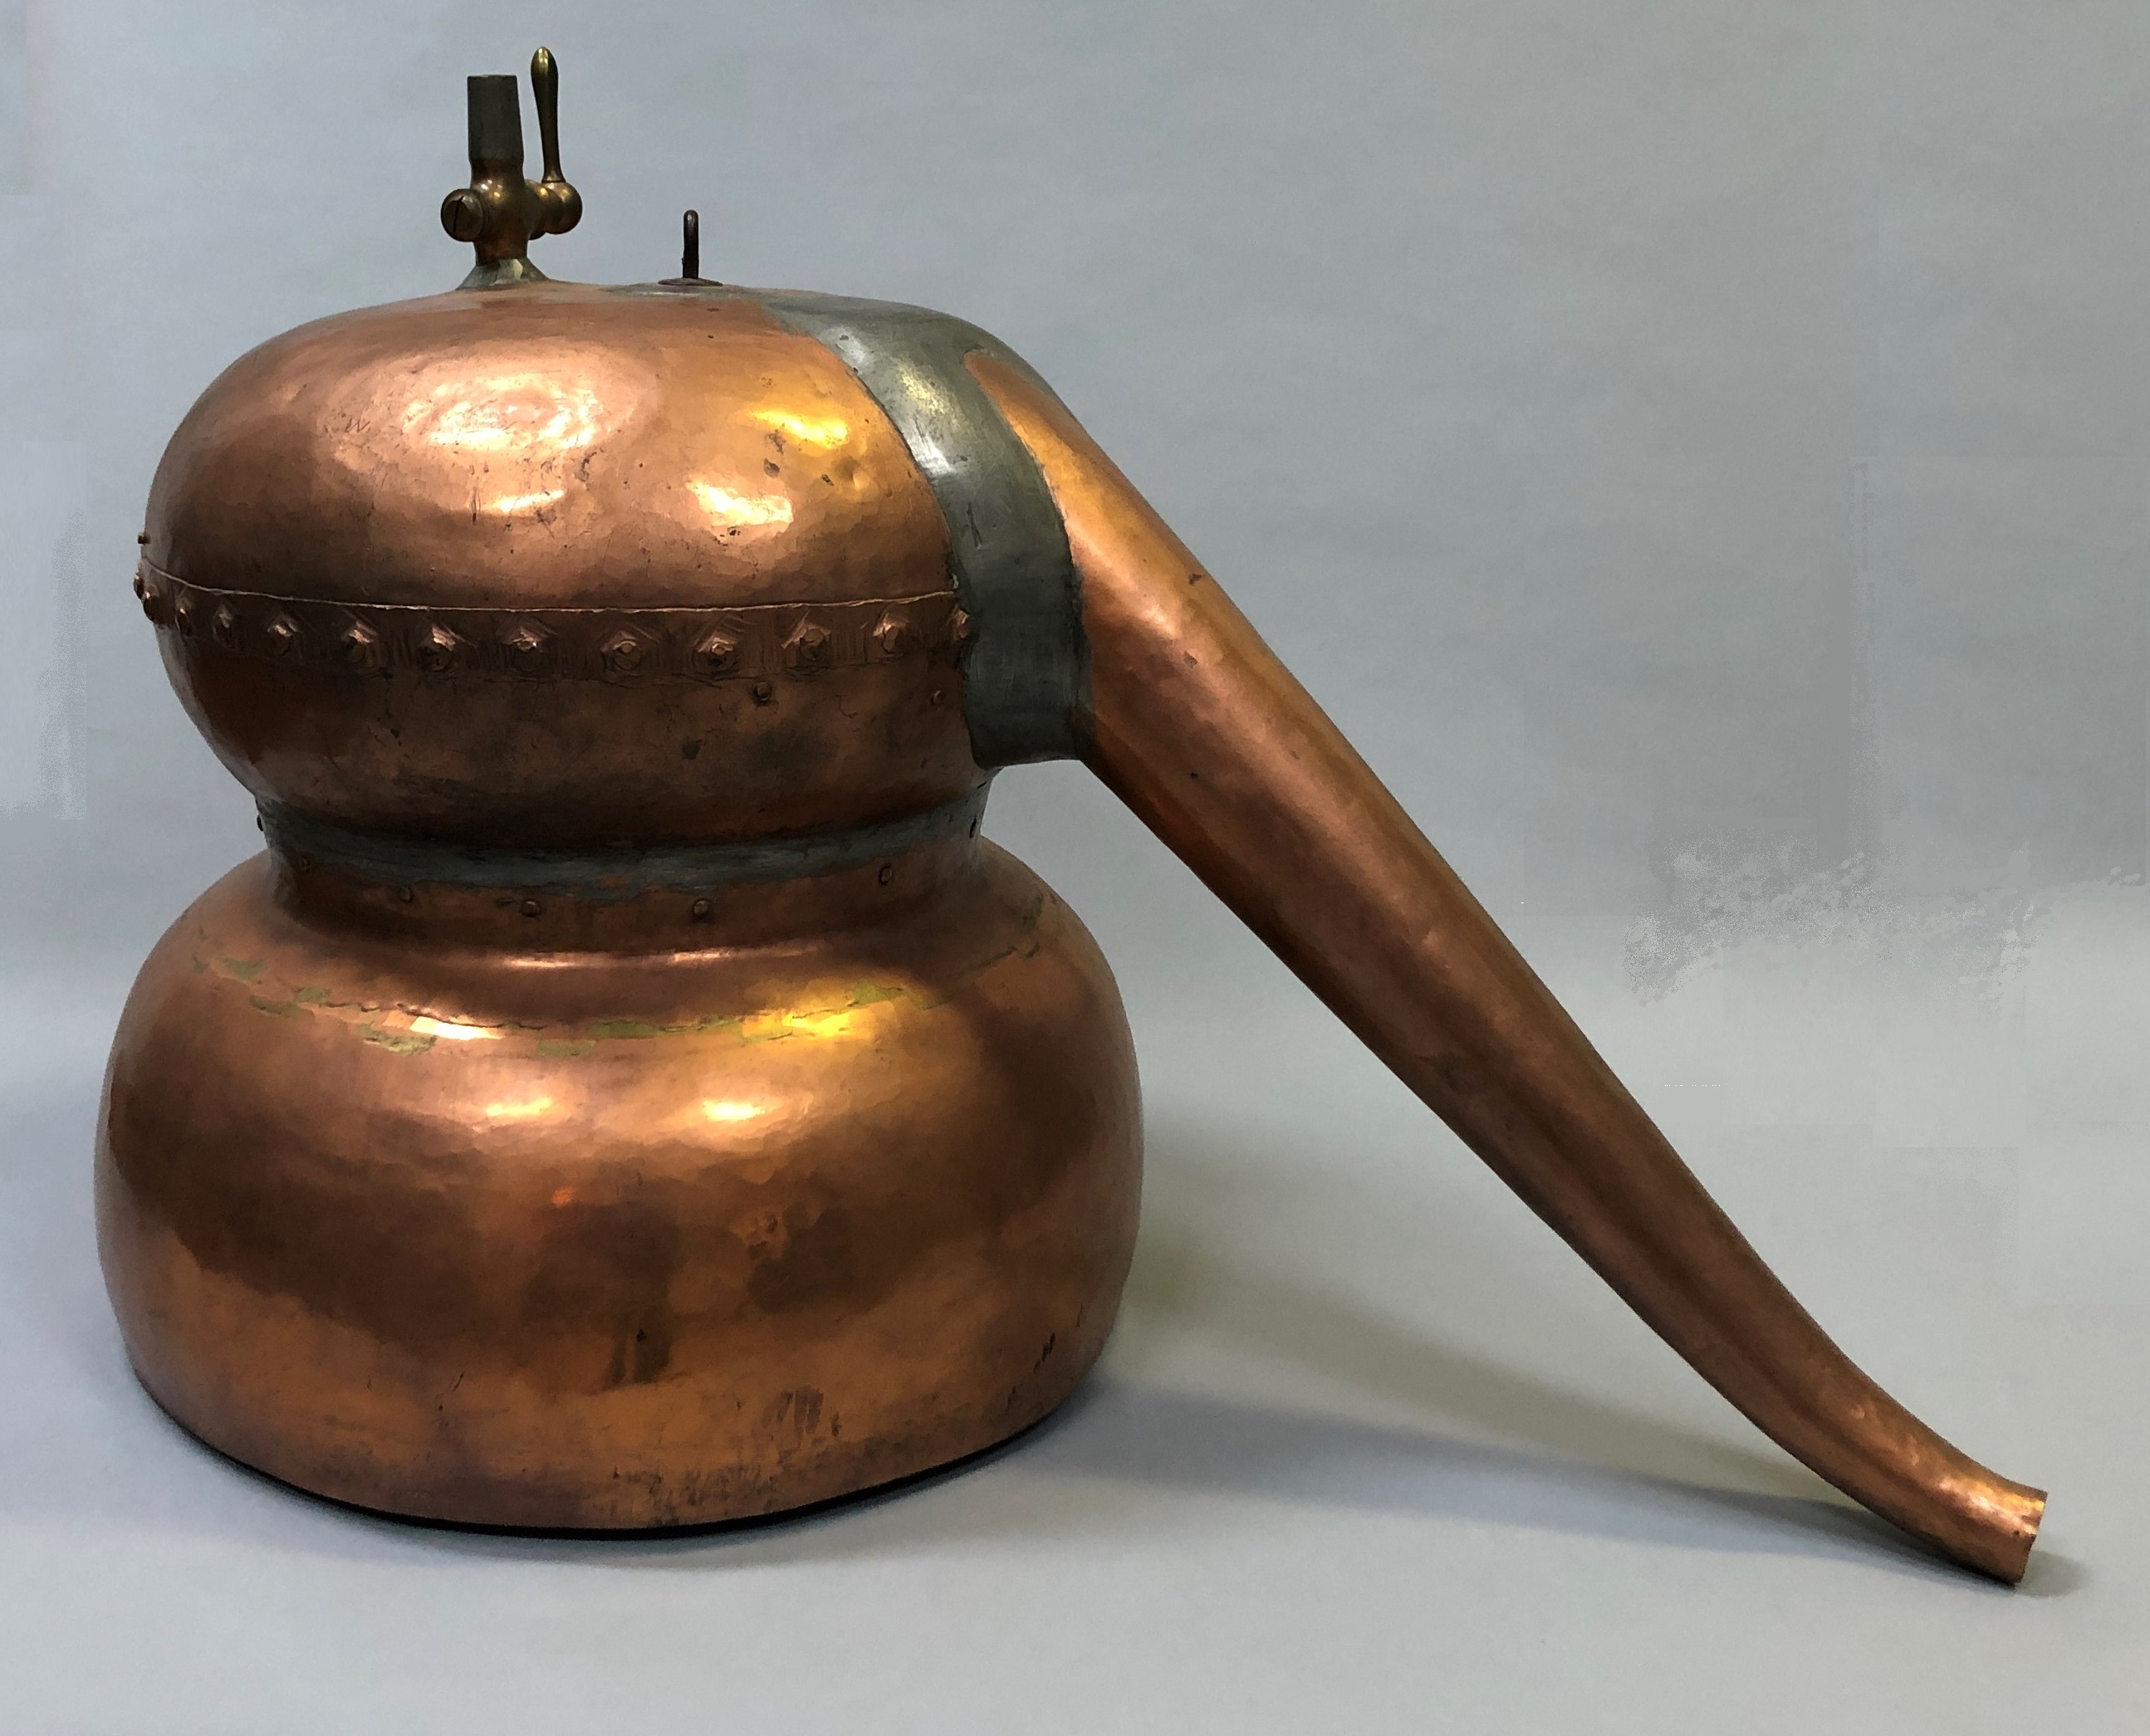 A copper pot with a long spout.